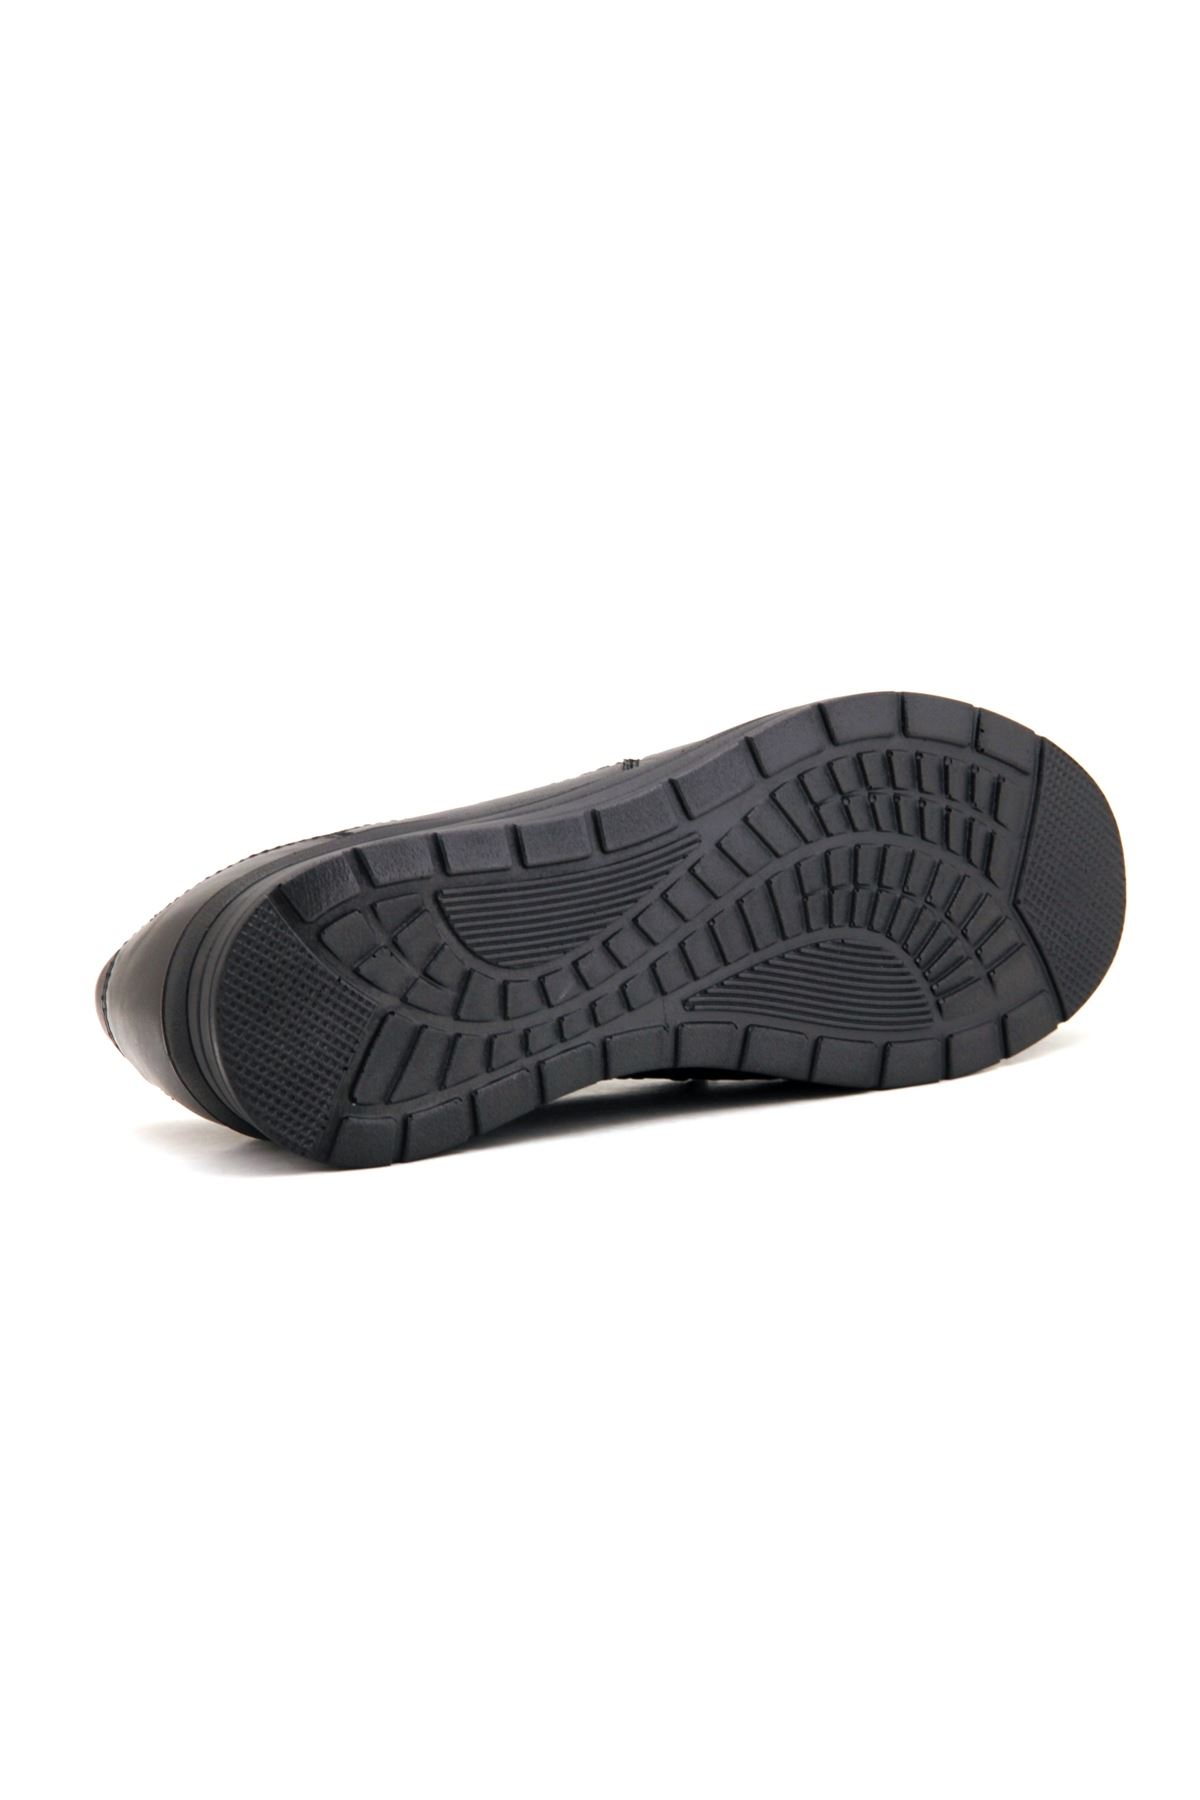 Forelli Andy (26226) Comfort Kadın Ayakkabı - Siyah